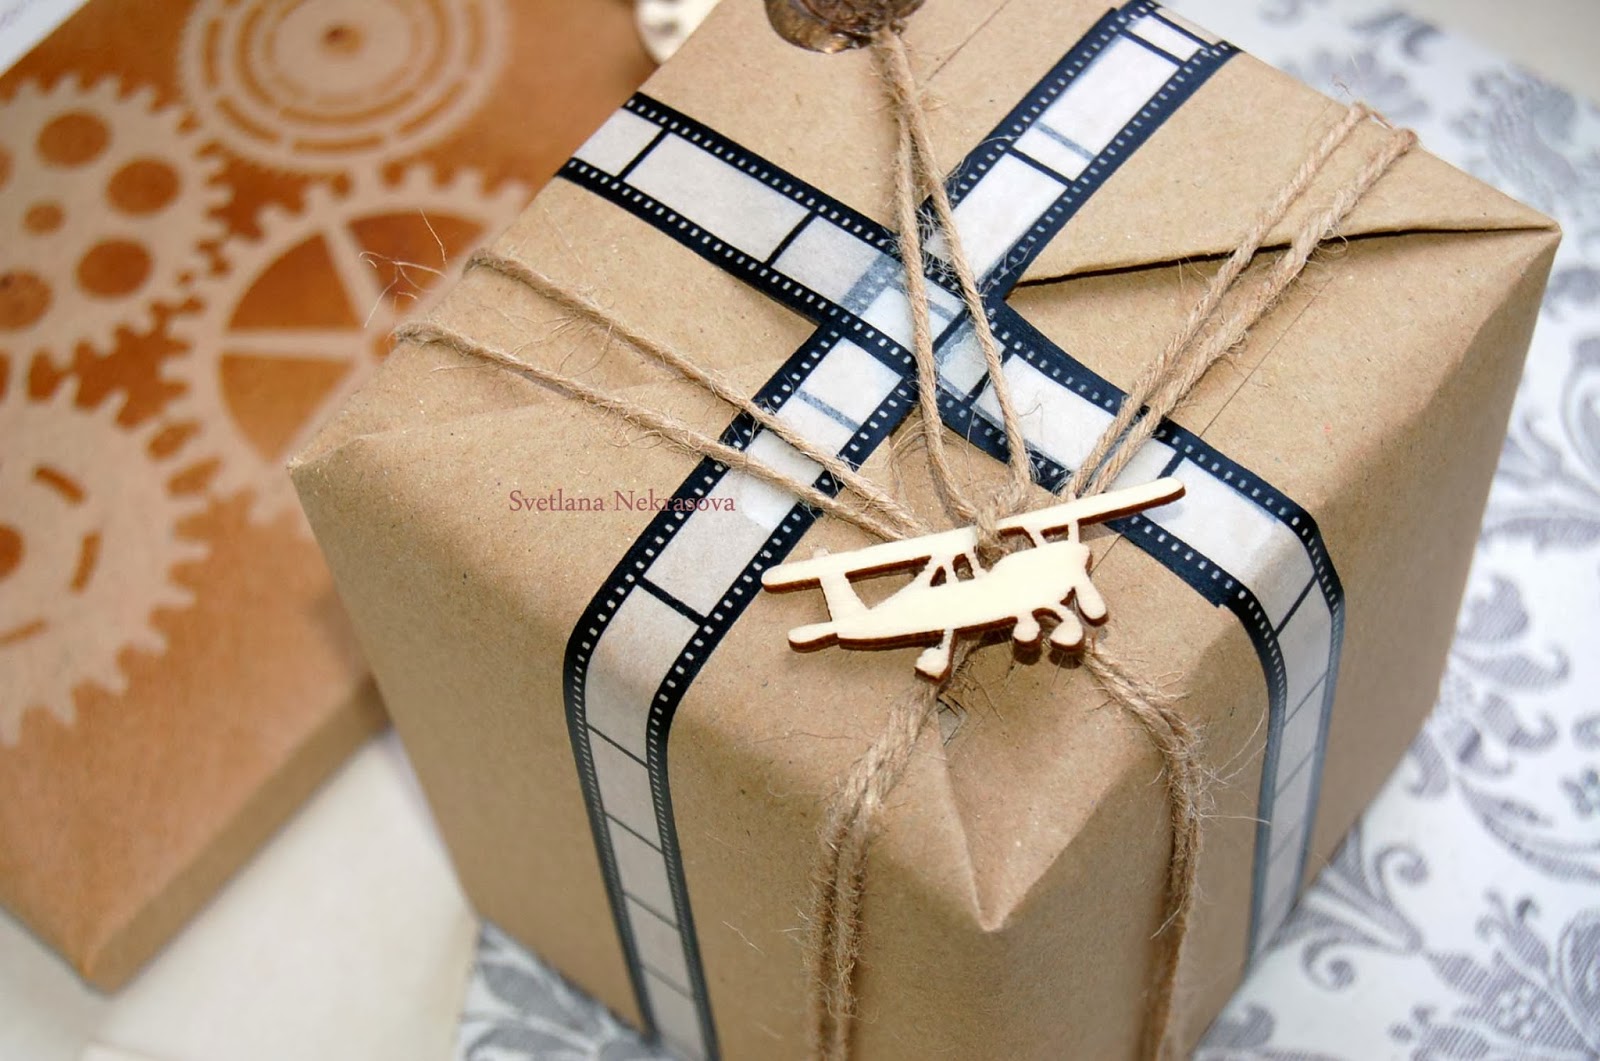 Завернуть подарок в подарочную. Оригинальная упаковка подарка. Красивая упаковка подарков. Упаковка подарка в крафт бумагу. Необычная упаковка подарка.